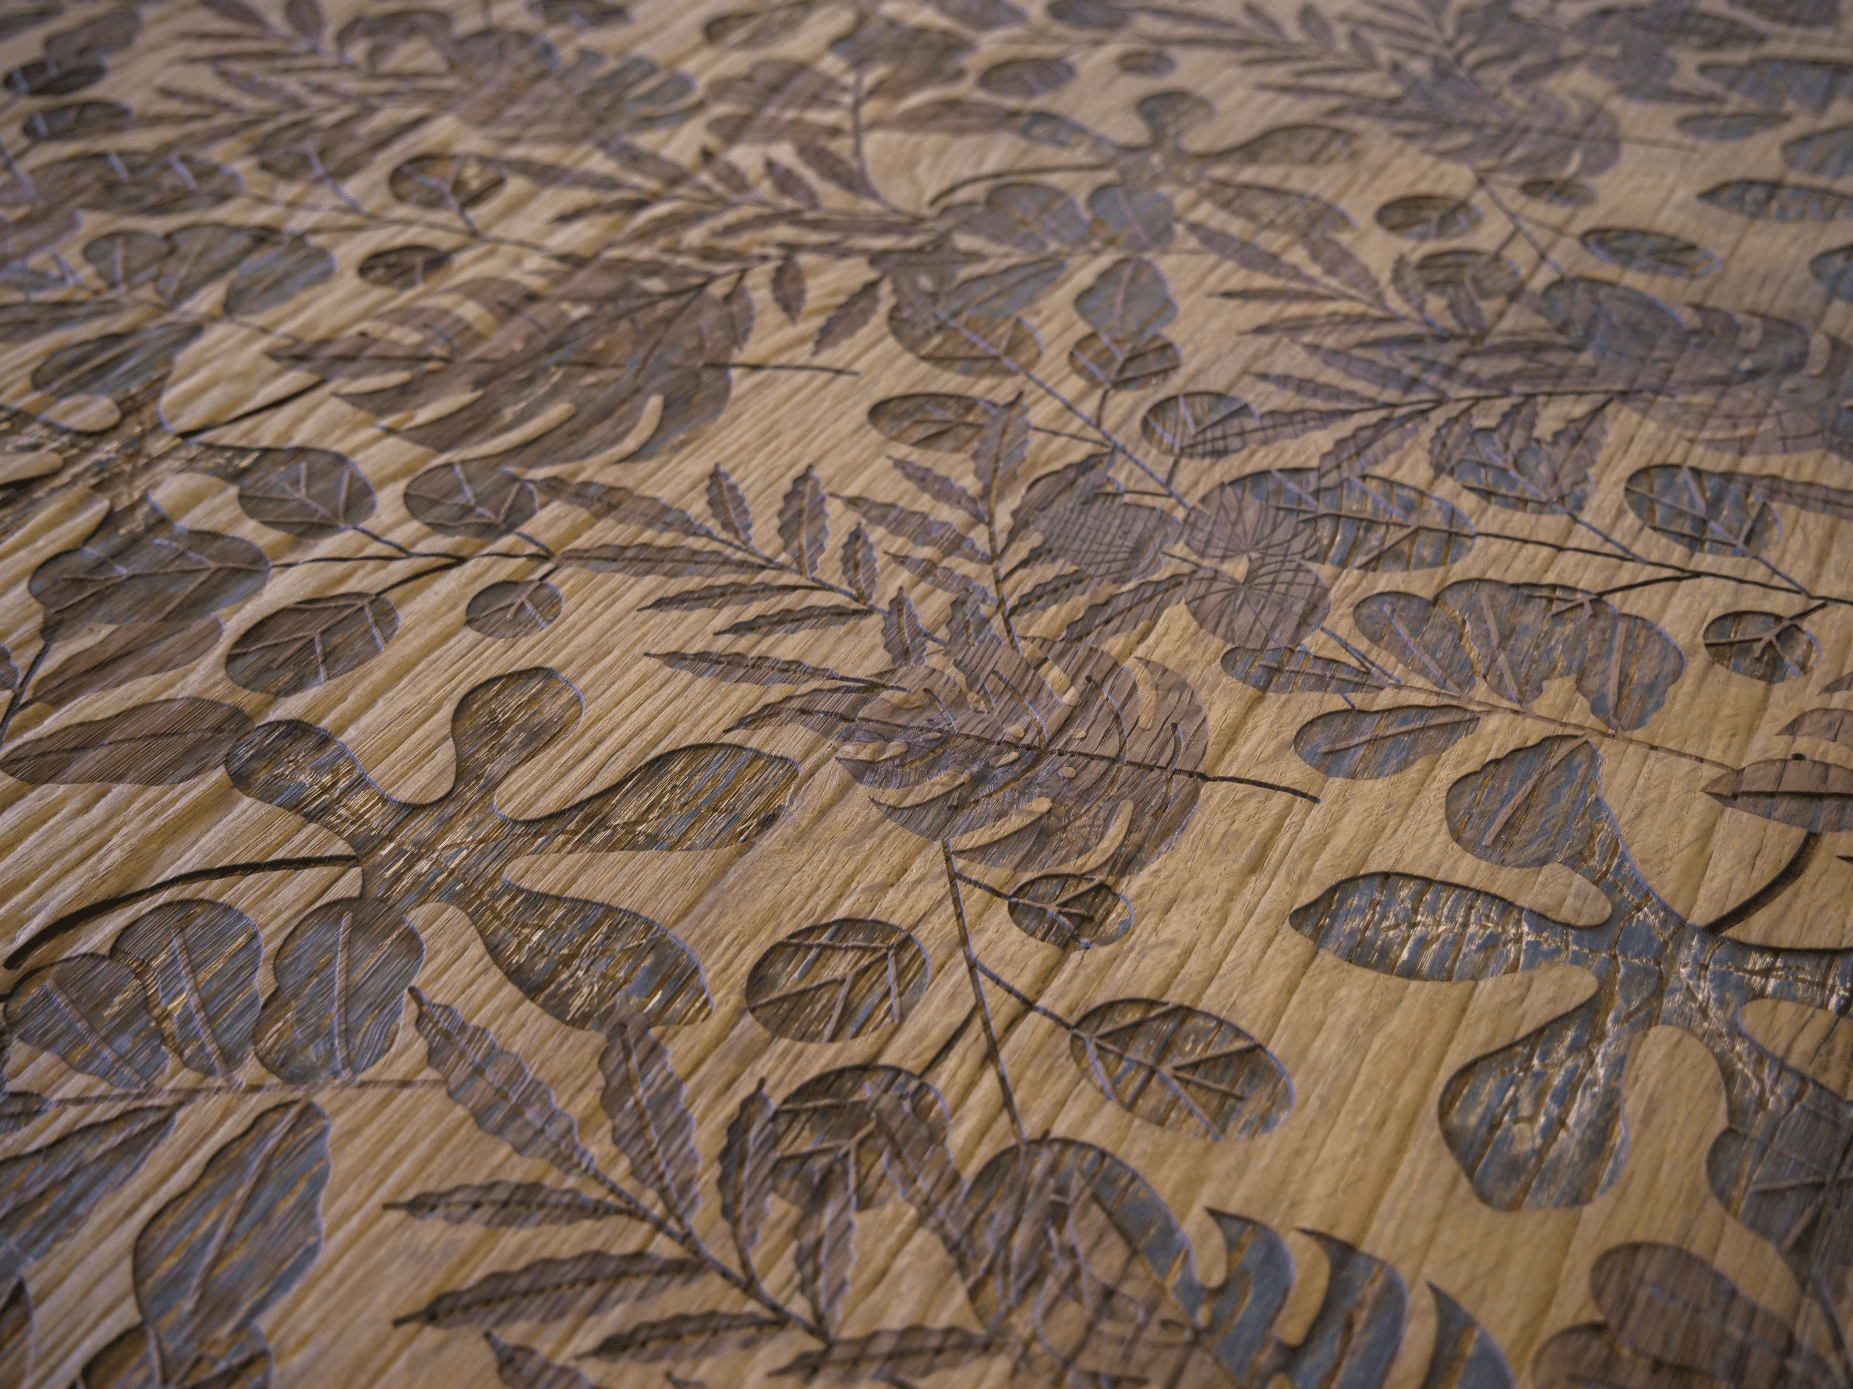 Keplinger zeigt eine Holzgravur in der Nahaufnahme mit schönem Muster bestehend aus Blättern in verschiedenen Größen und Formen.